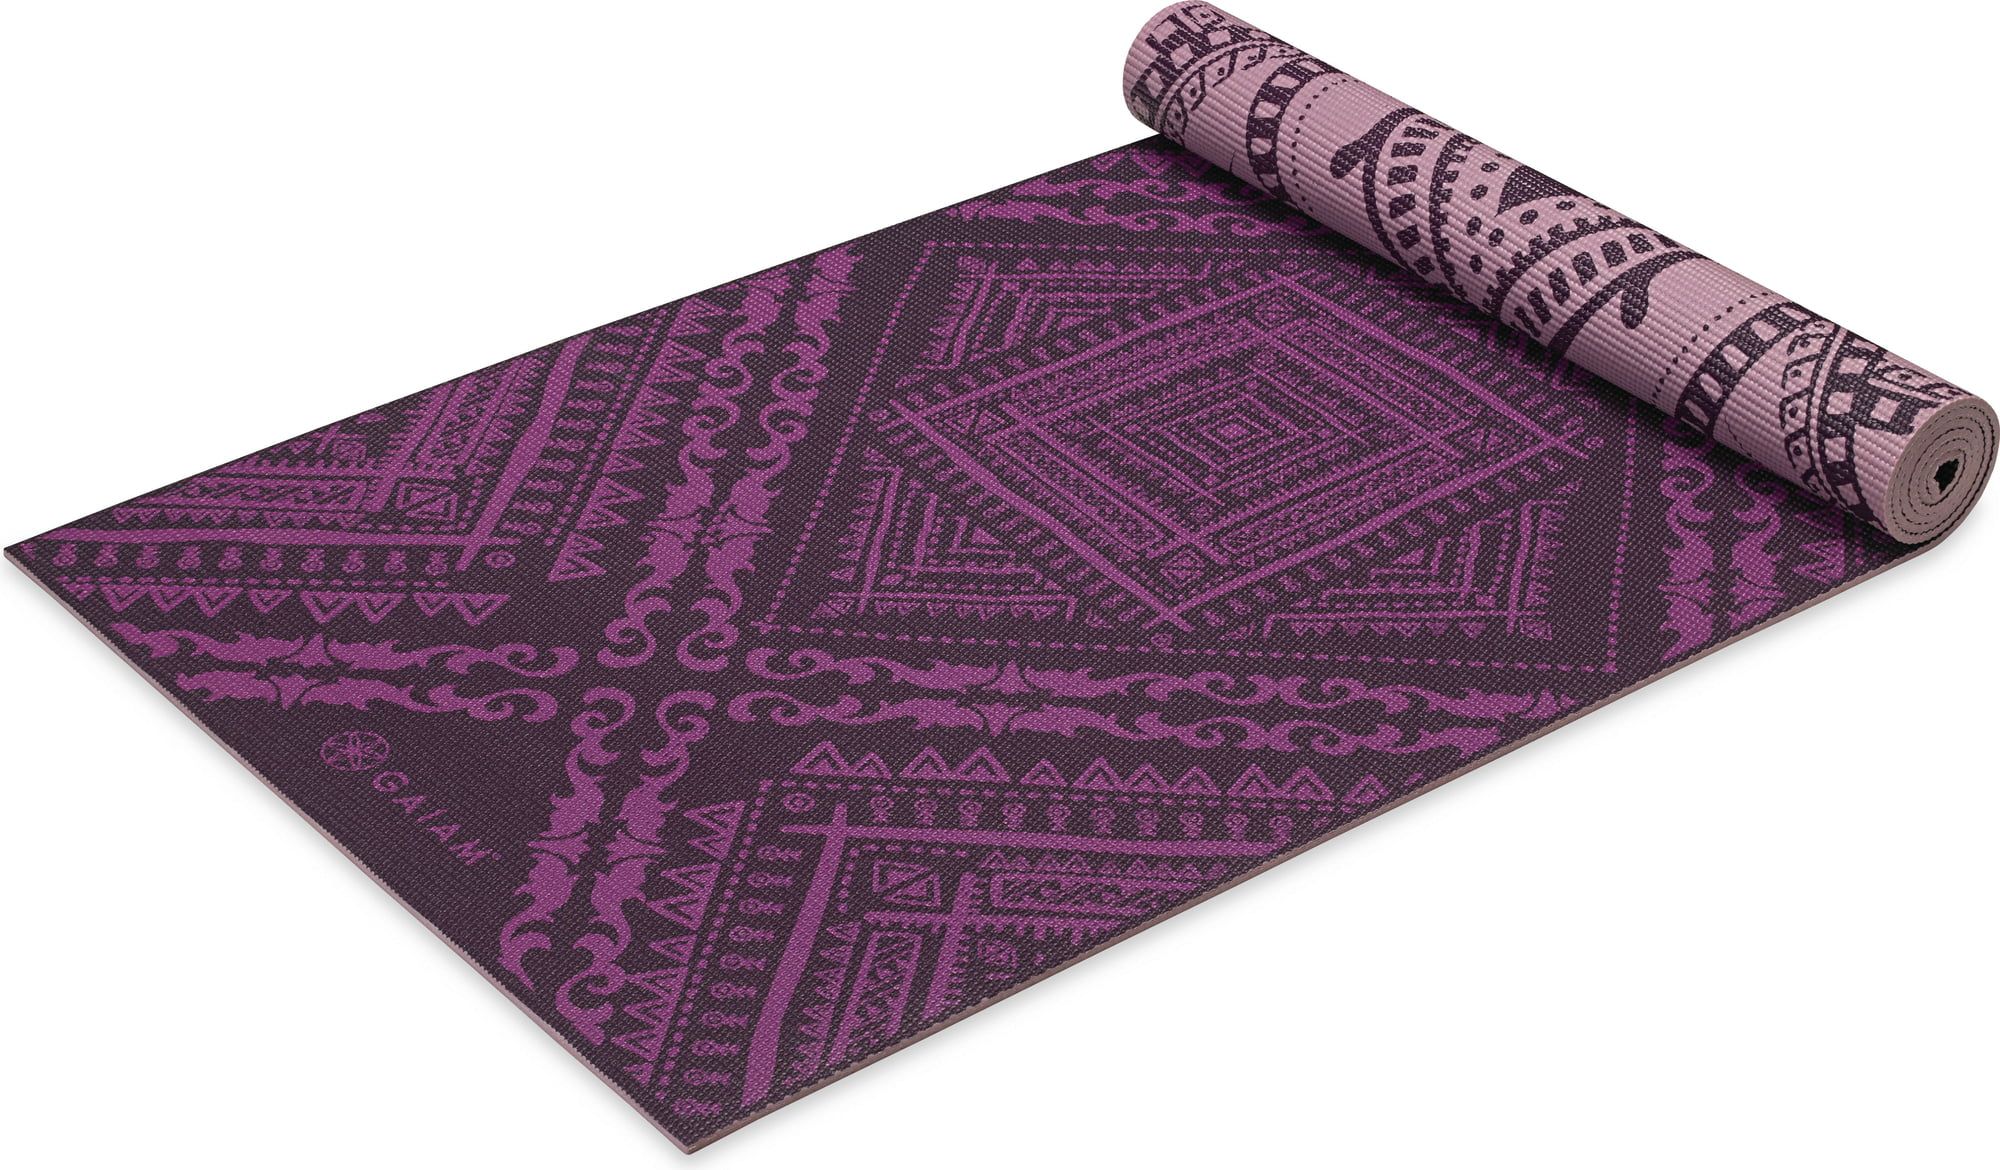 Gaiam Yoga Mat Premium Print Reversible Extra Thick Non Slip